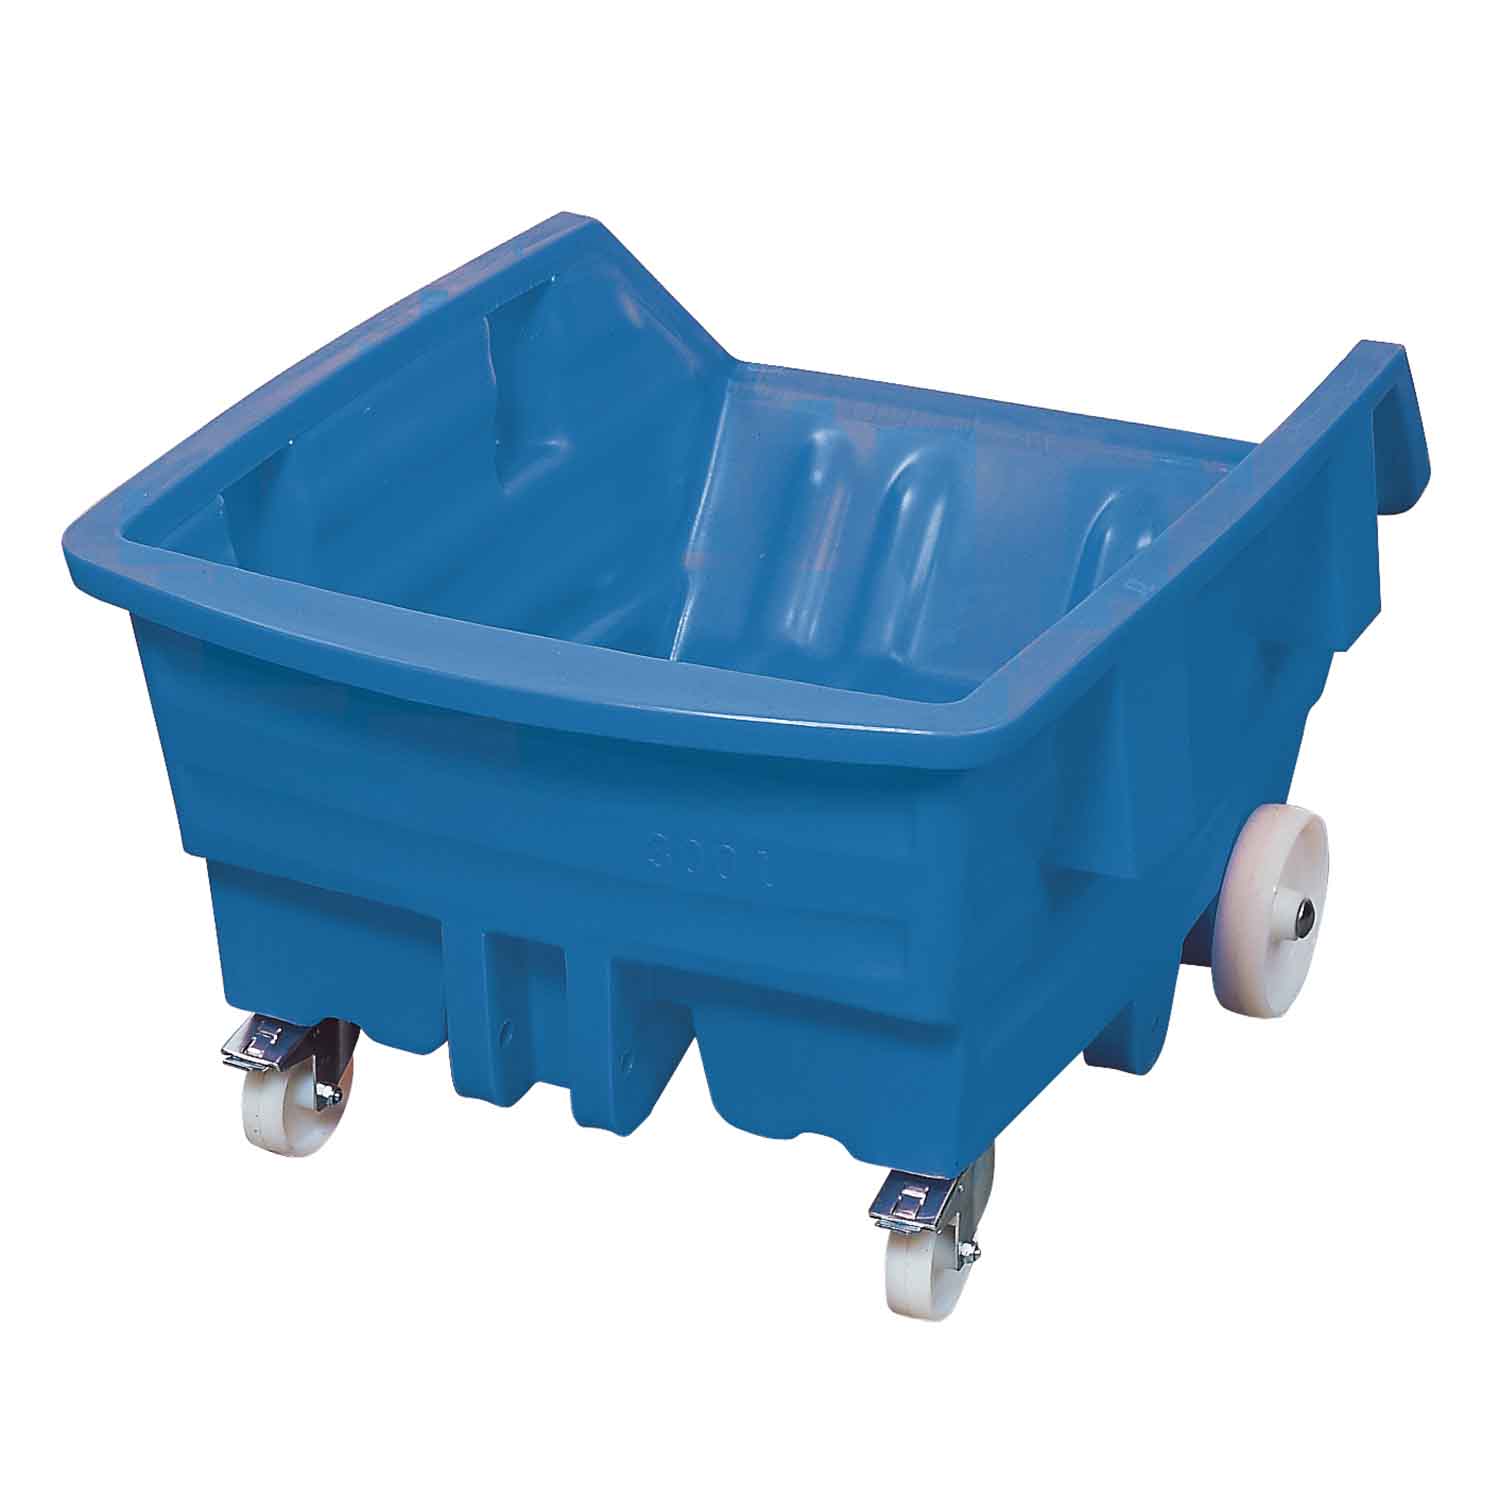 Kippwagen aus Polyethylen (PE) mit Polyamid-Rollen, Volumen 300 l